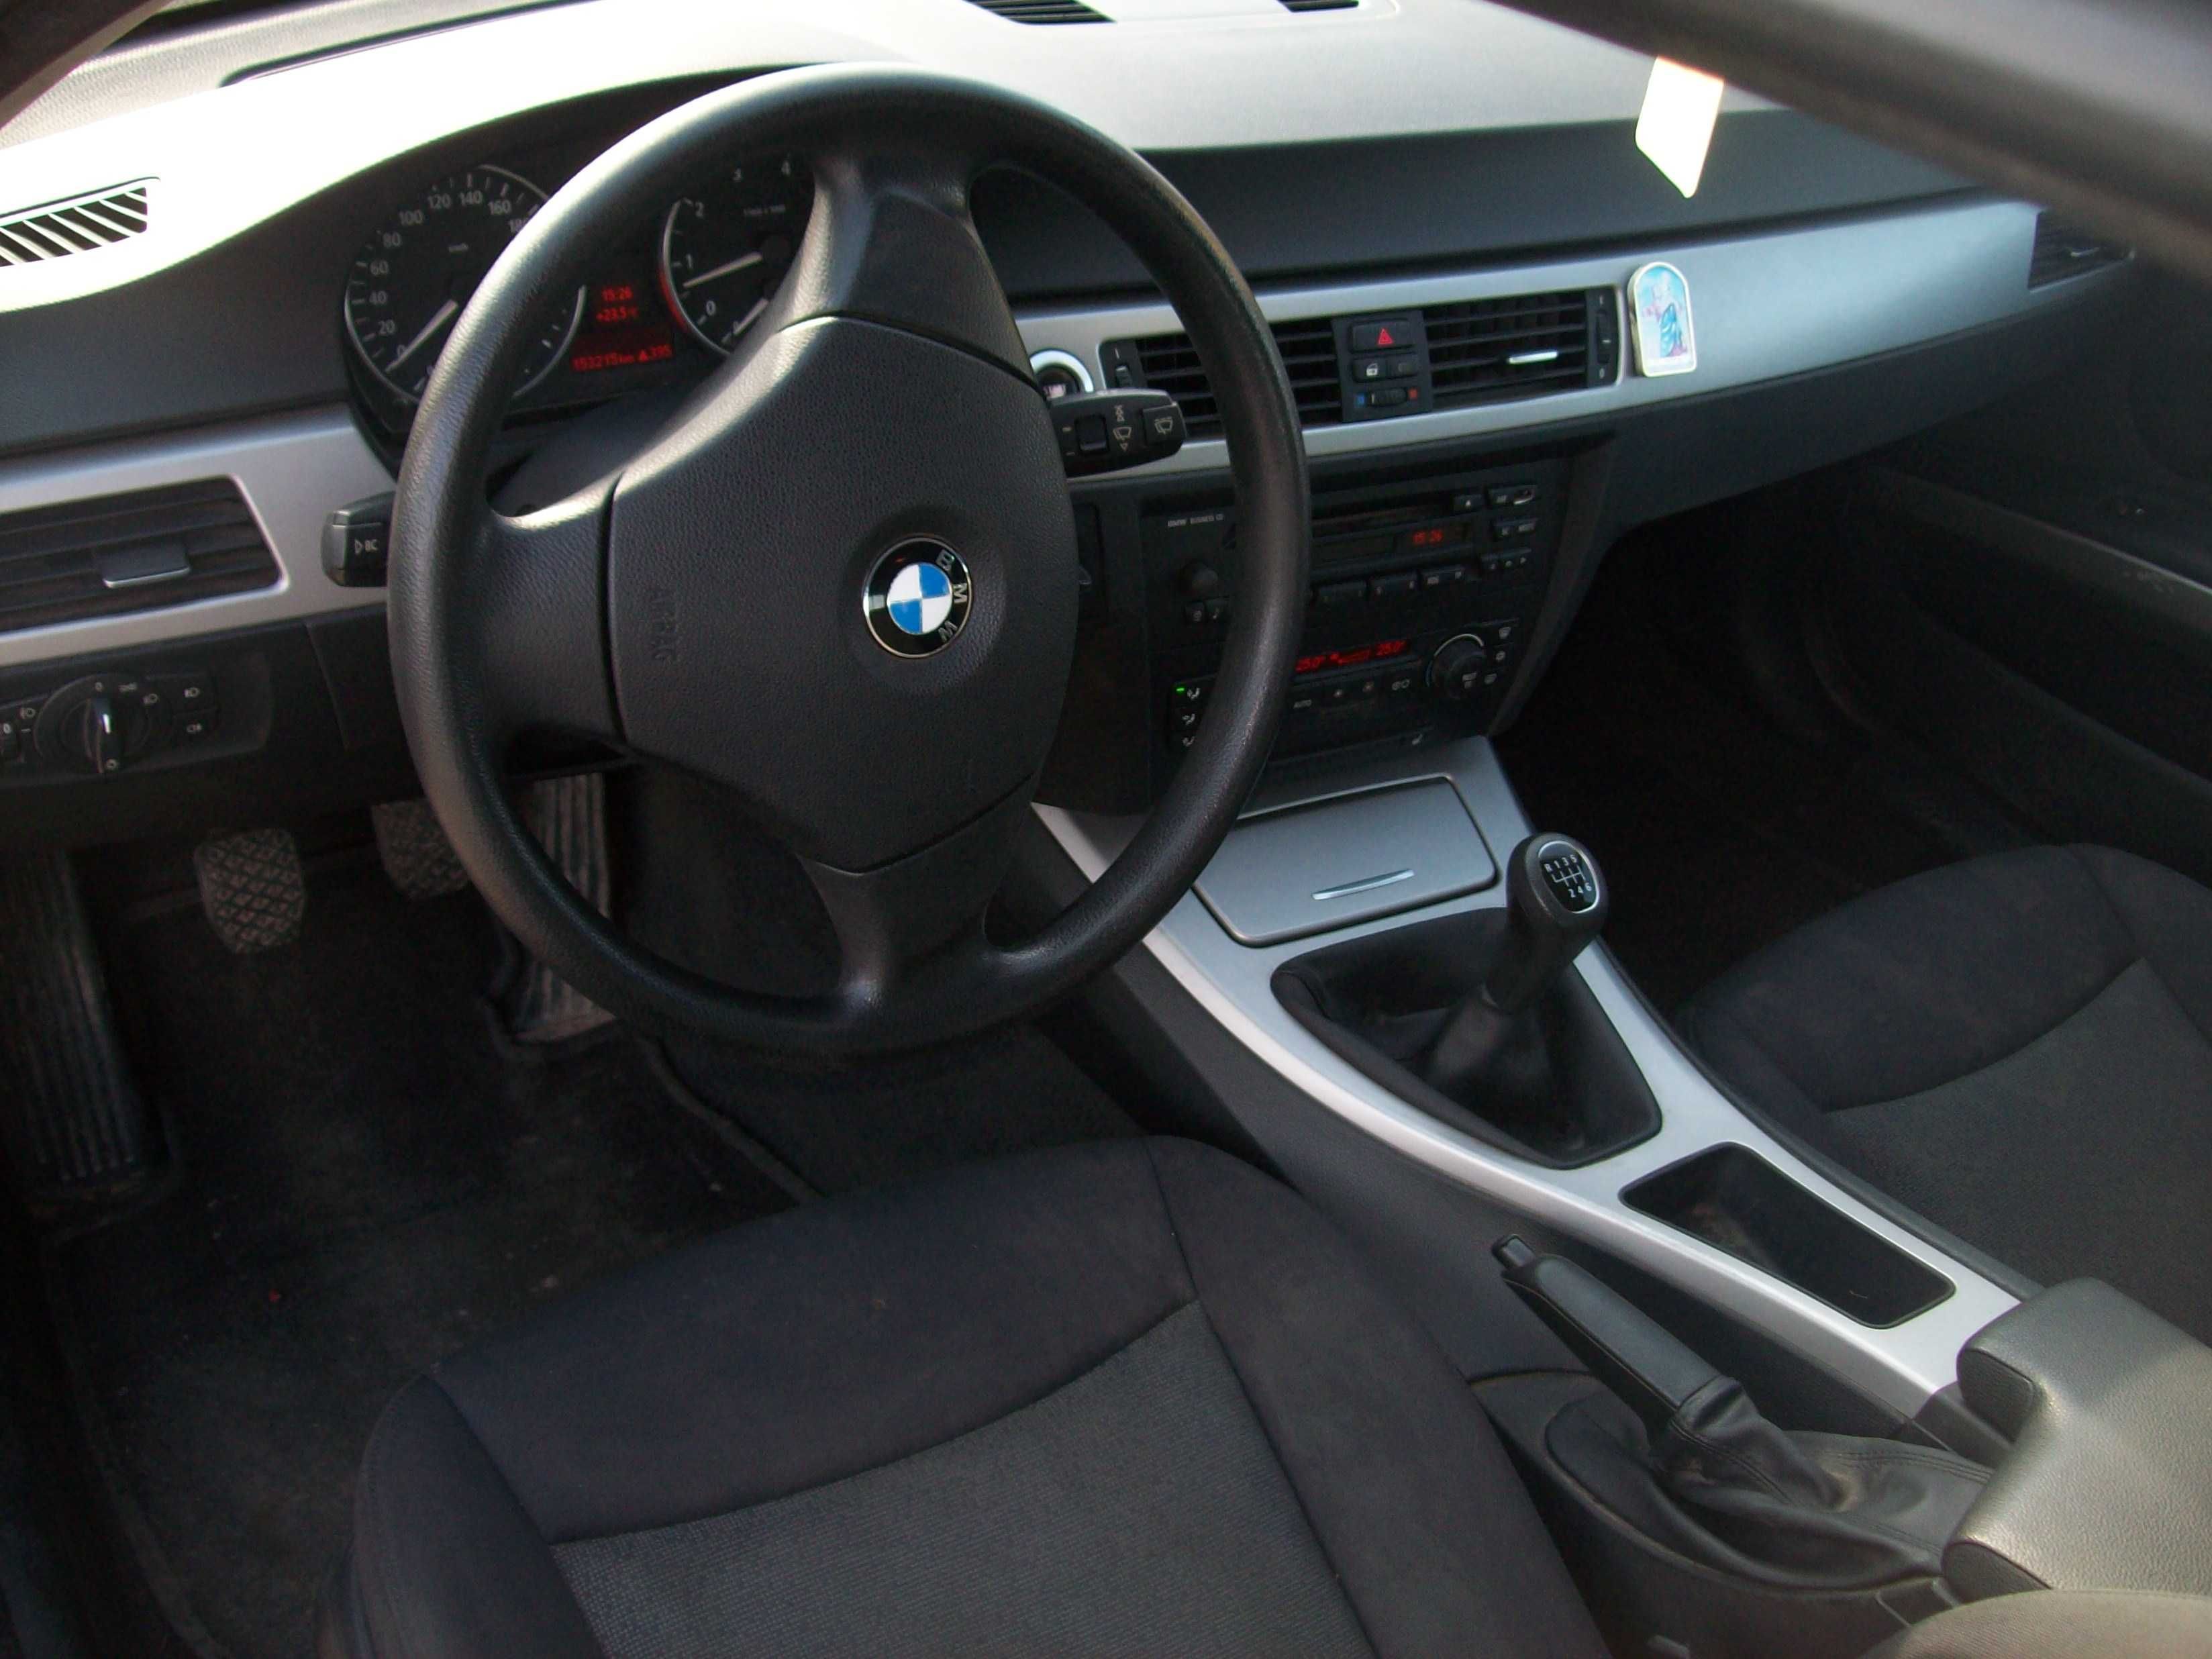 BMW 318i 2005 prywatnie